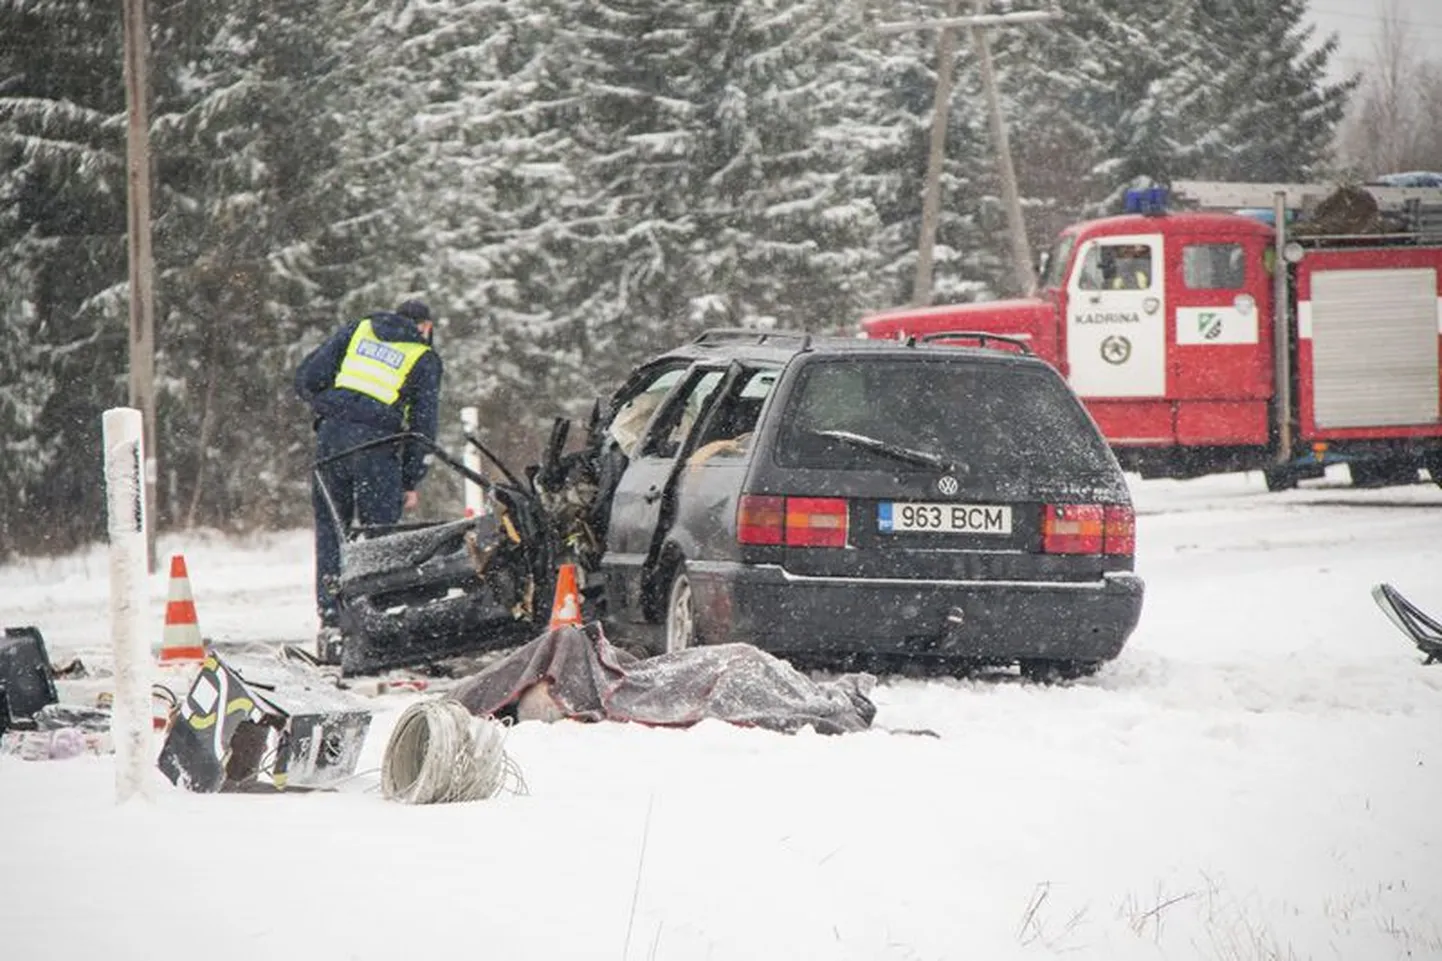 Eelmise aasta rängim õnnetus juhtus 3. novembril Kariväraval. Kaubiku ja sõiduauto kokkupõrkes hukkusid kõik autodes olnud kolm inimest.